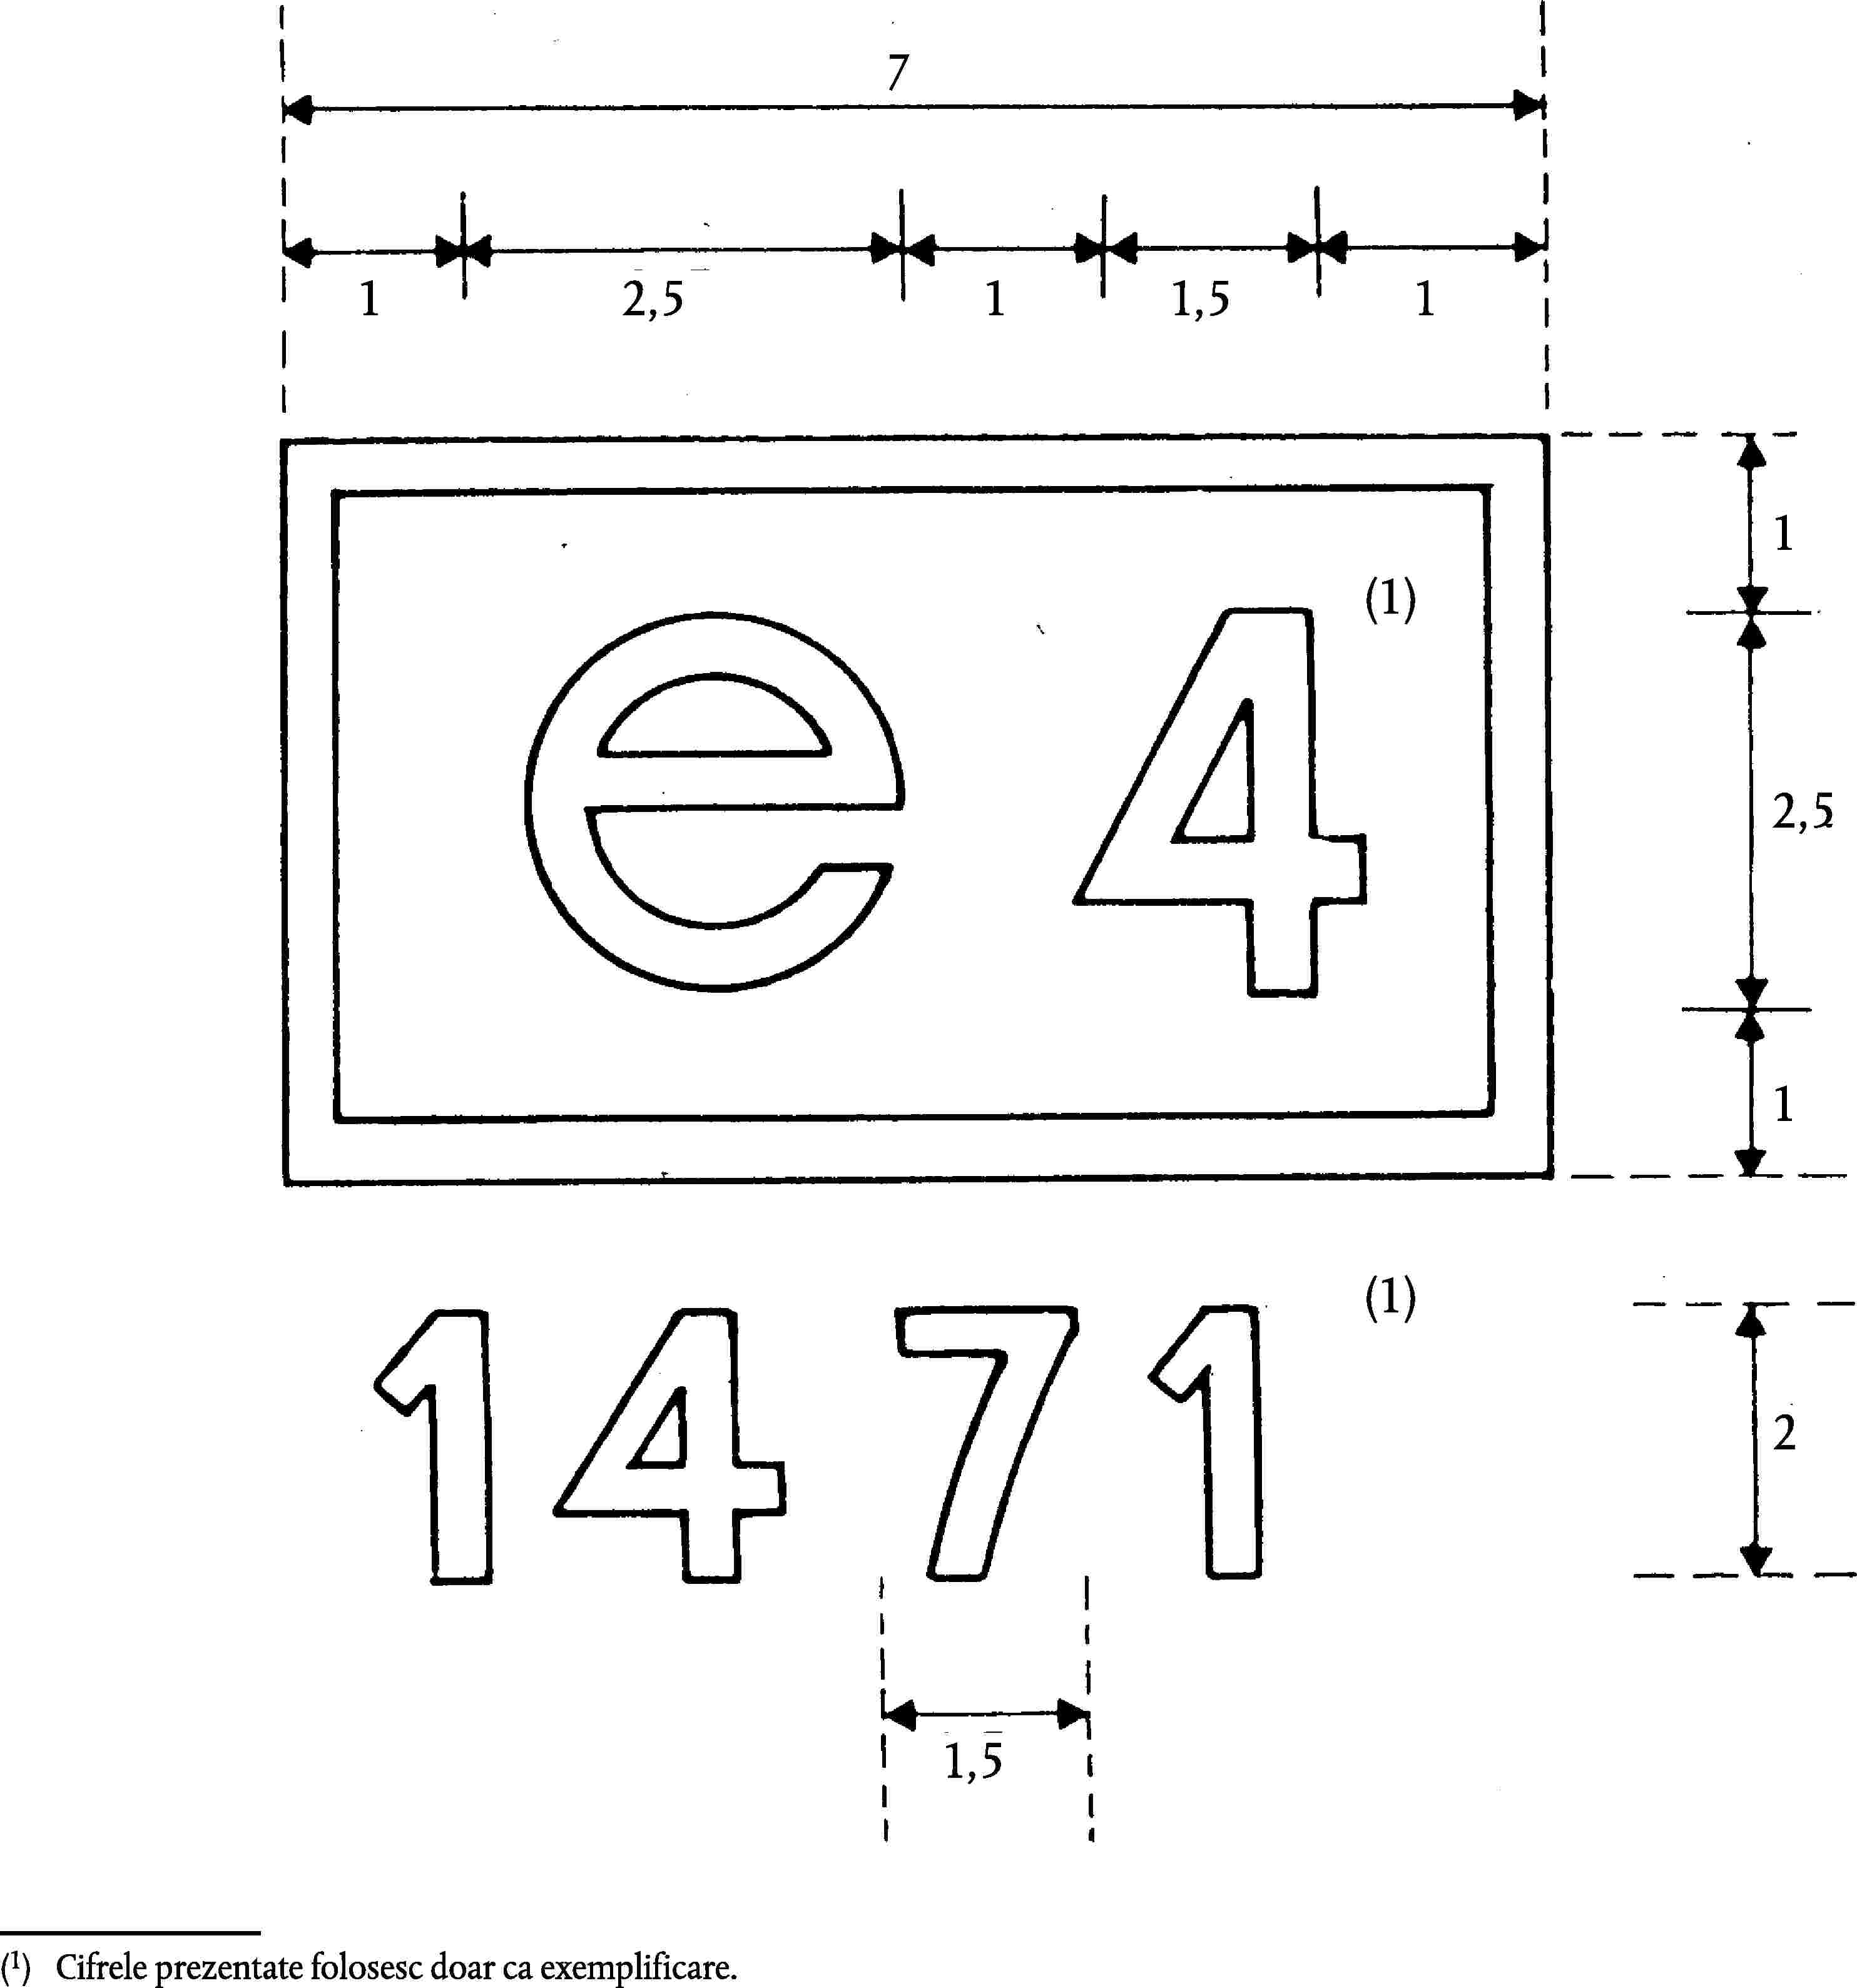 712,511,511(1)2,51(1)21,5(1)Cifrele prezentate folosesc doar ca exemplificare.